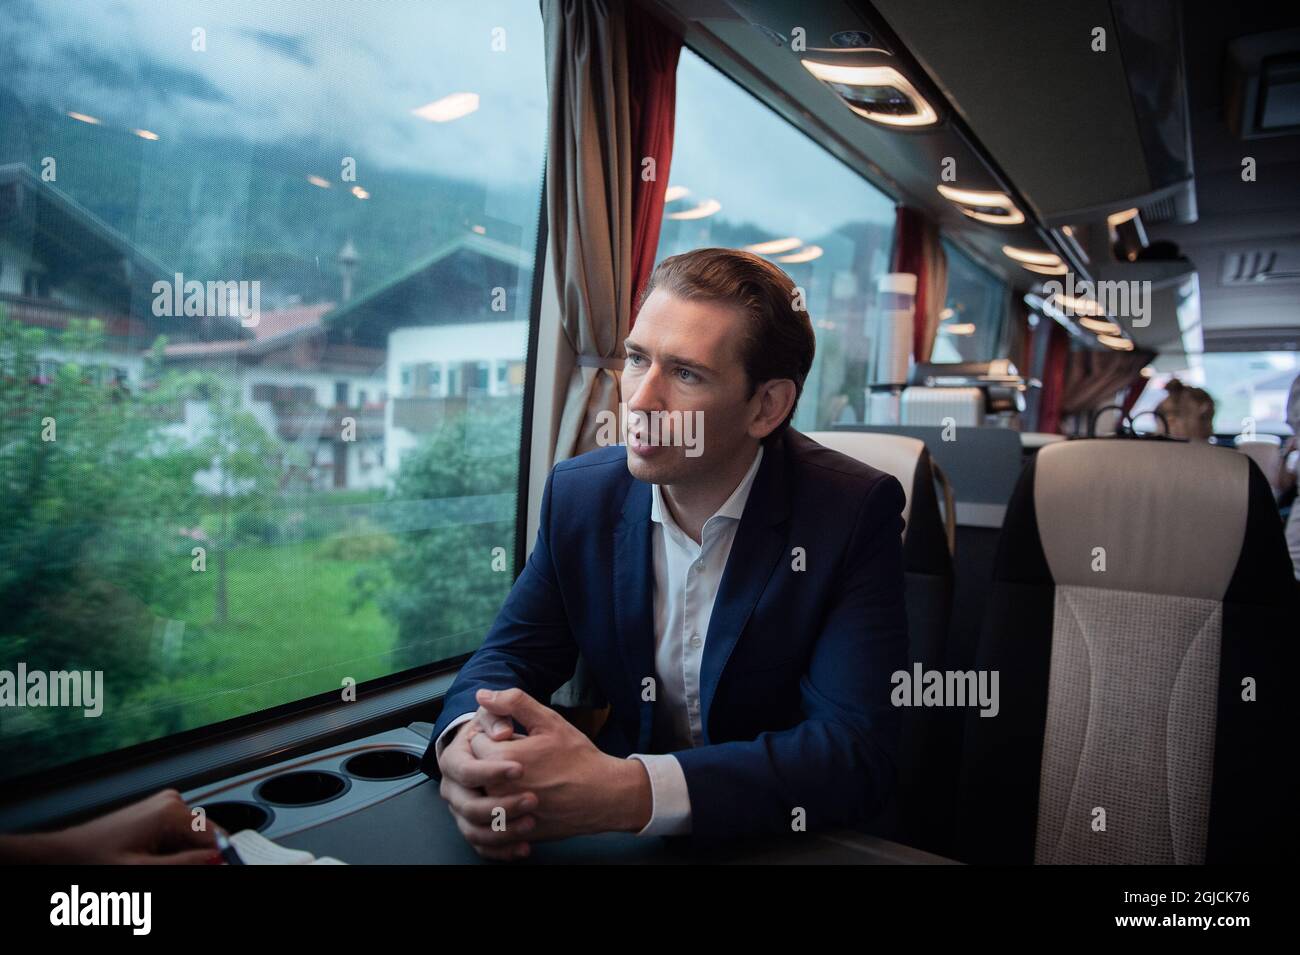 Sebastian Kurz, président du Parti populaire autrichien Foto: Kevin Chang / TT / Kod: 3000 Banque D'Images